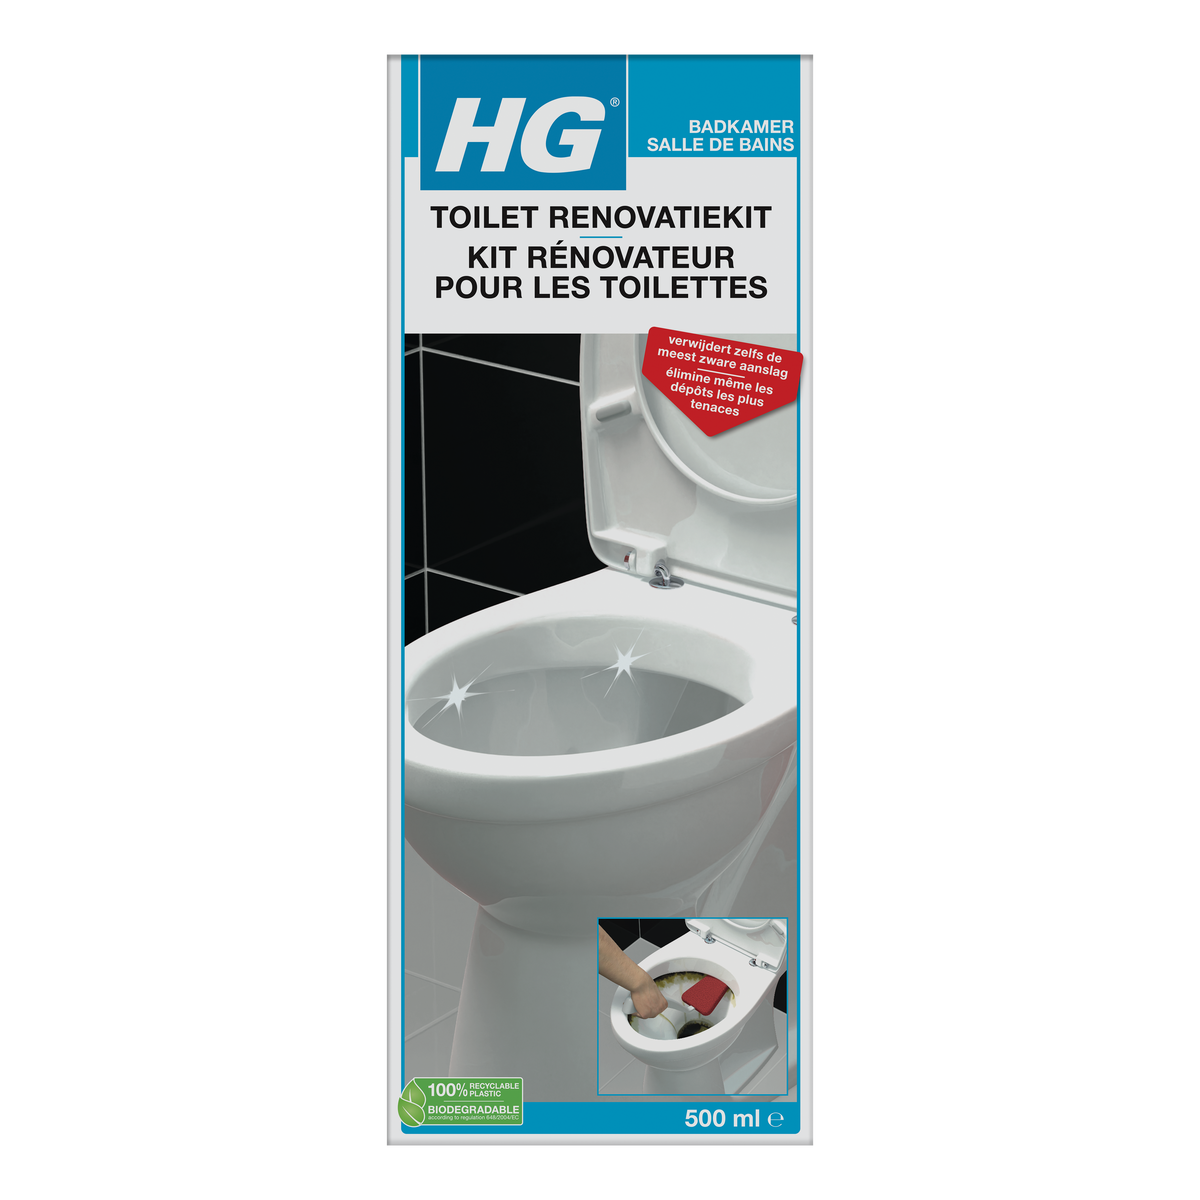 HG toilet renovatiekit 500ml